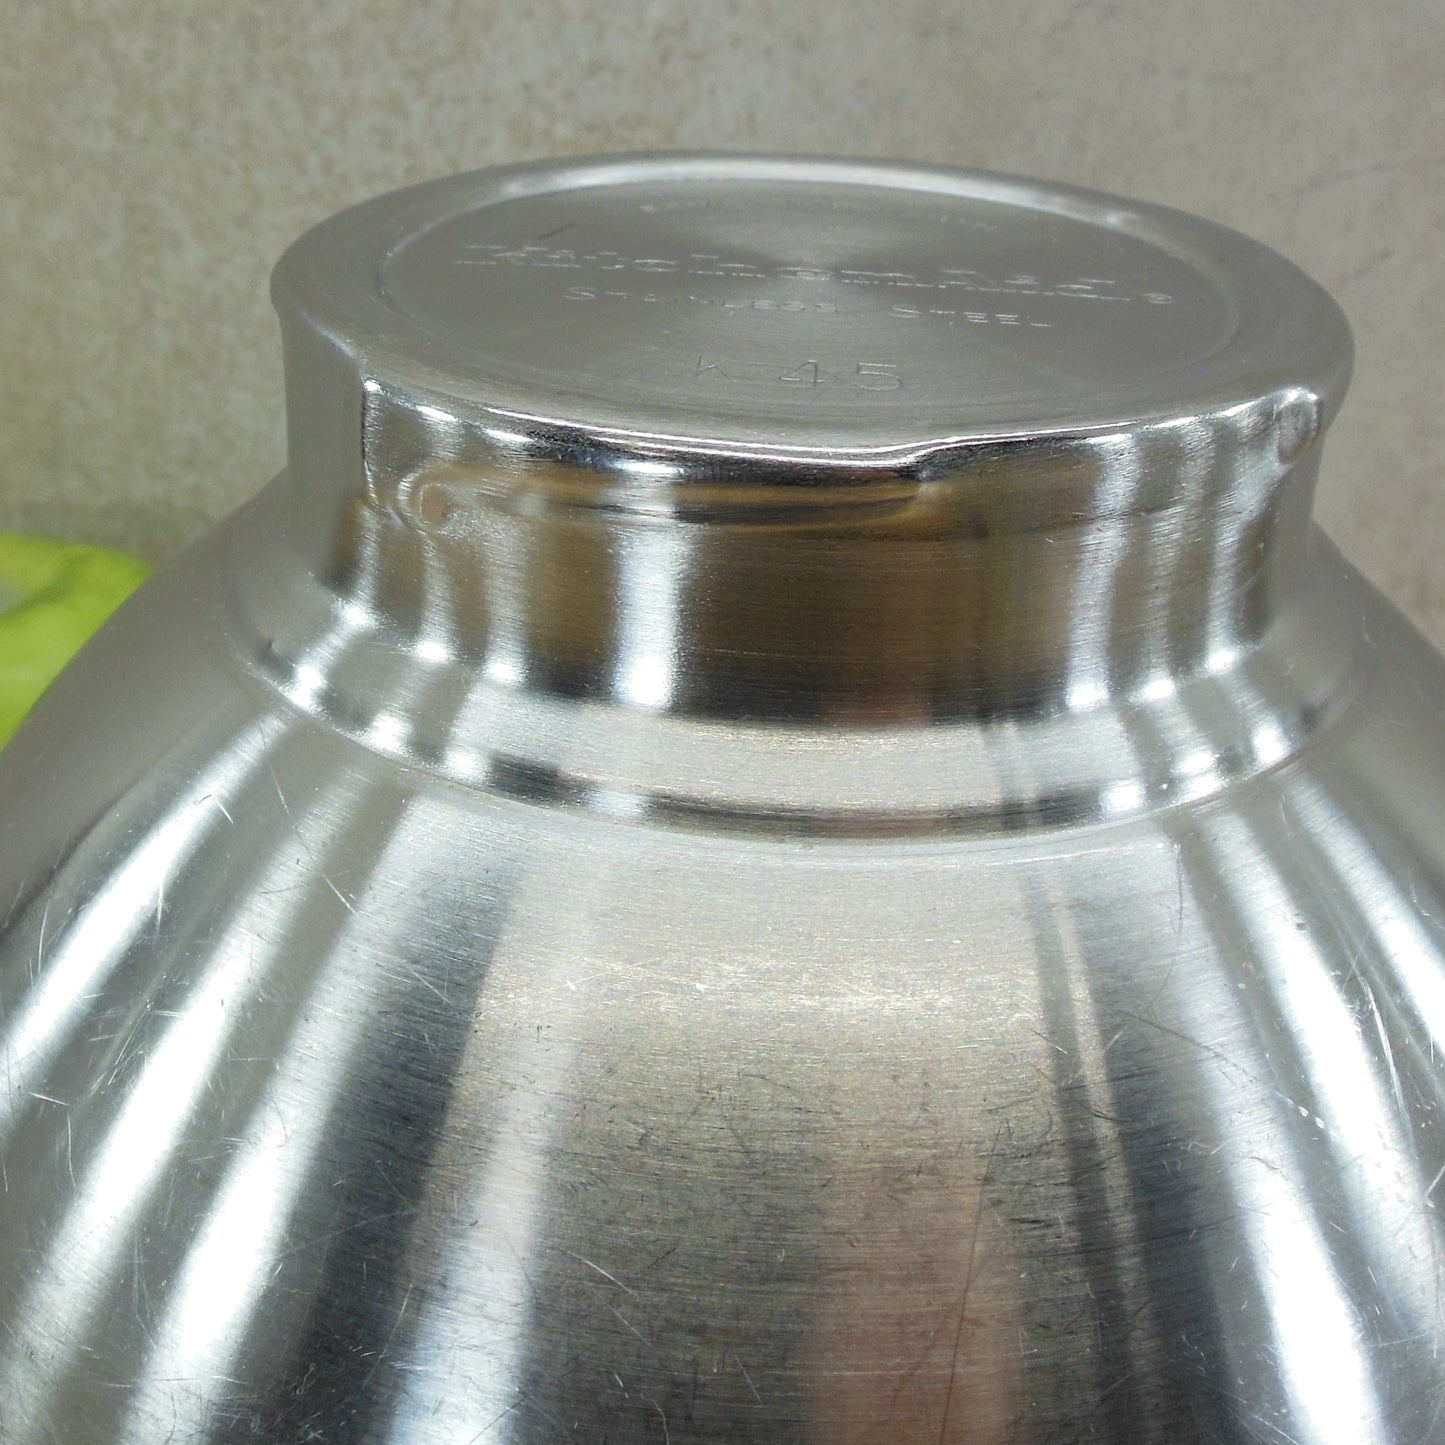 KitchenAid K45 Stainless Steel 4.5 Quart Stand Mixer Bowl Korea